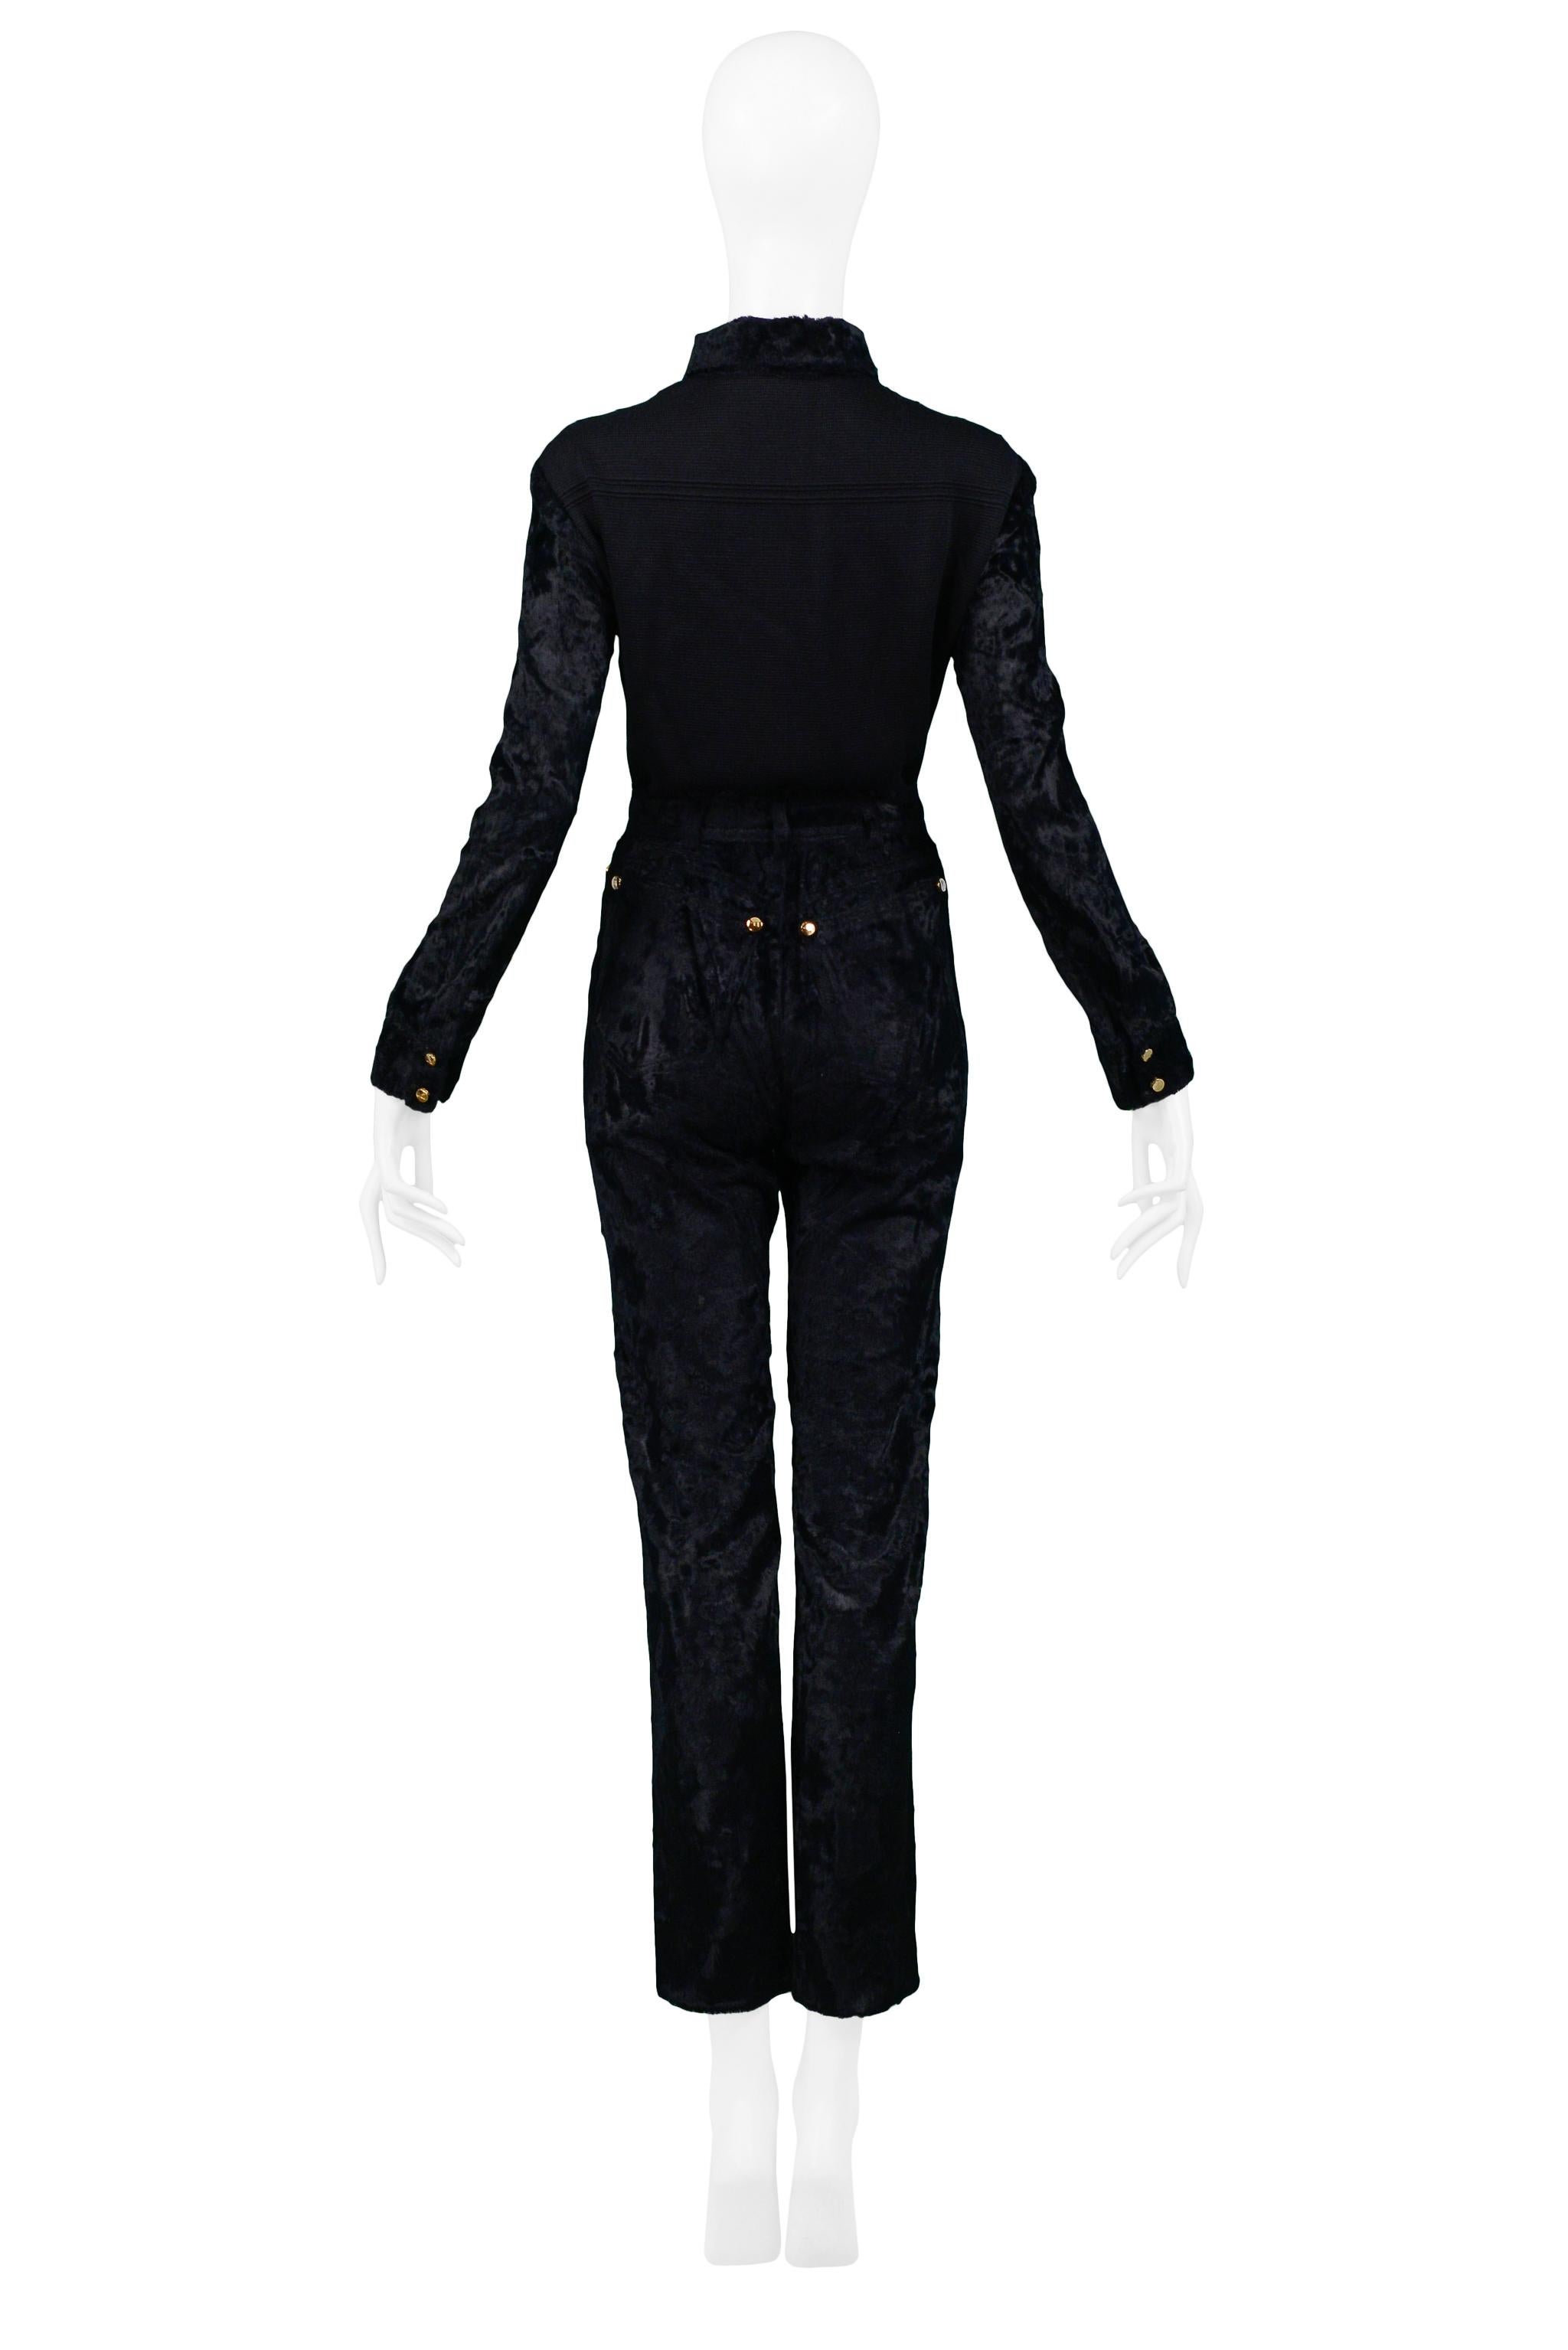 Black Gianfranco Ferre Faux Fur Velvet And Double Knit Pant Suit Ensemble For Sale